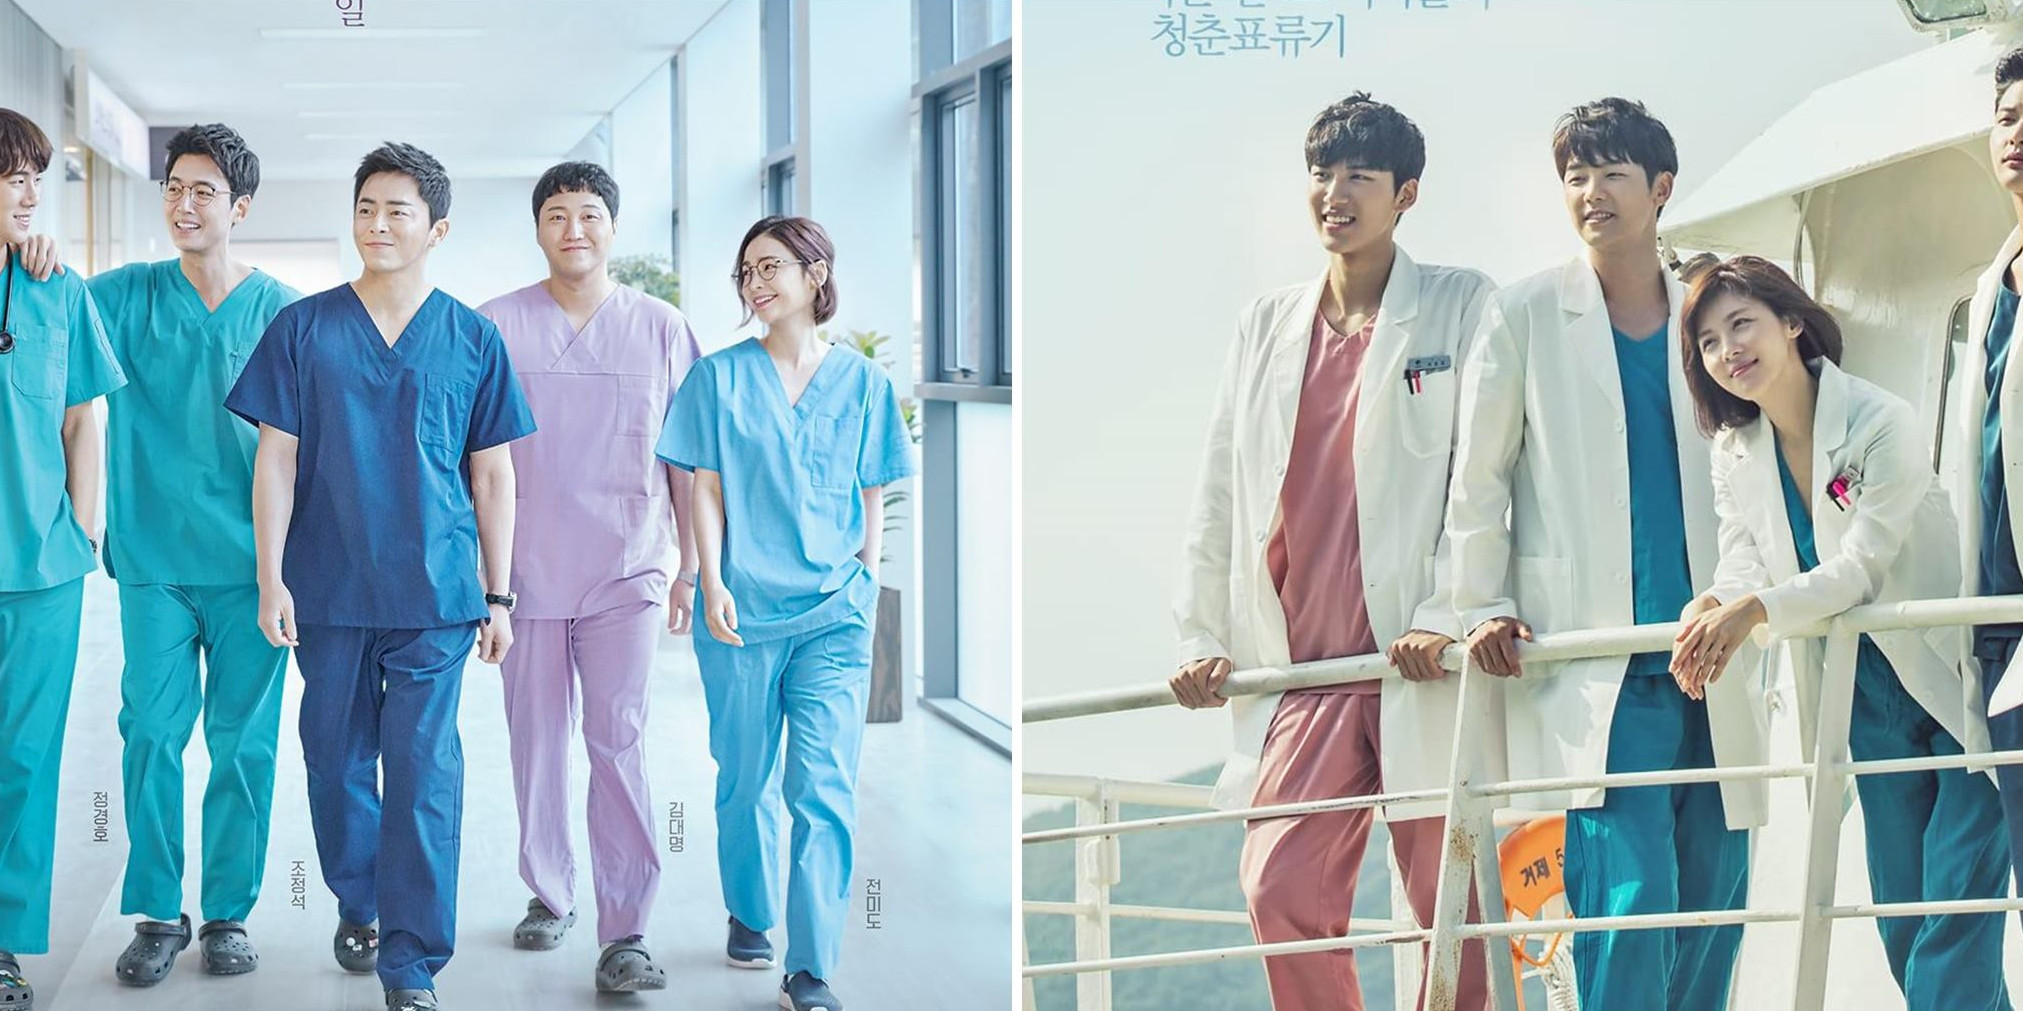 11 Drama Korea kedokteran terbaik versi IMDb, ada sentuhan kisah cinta